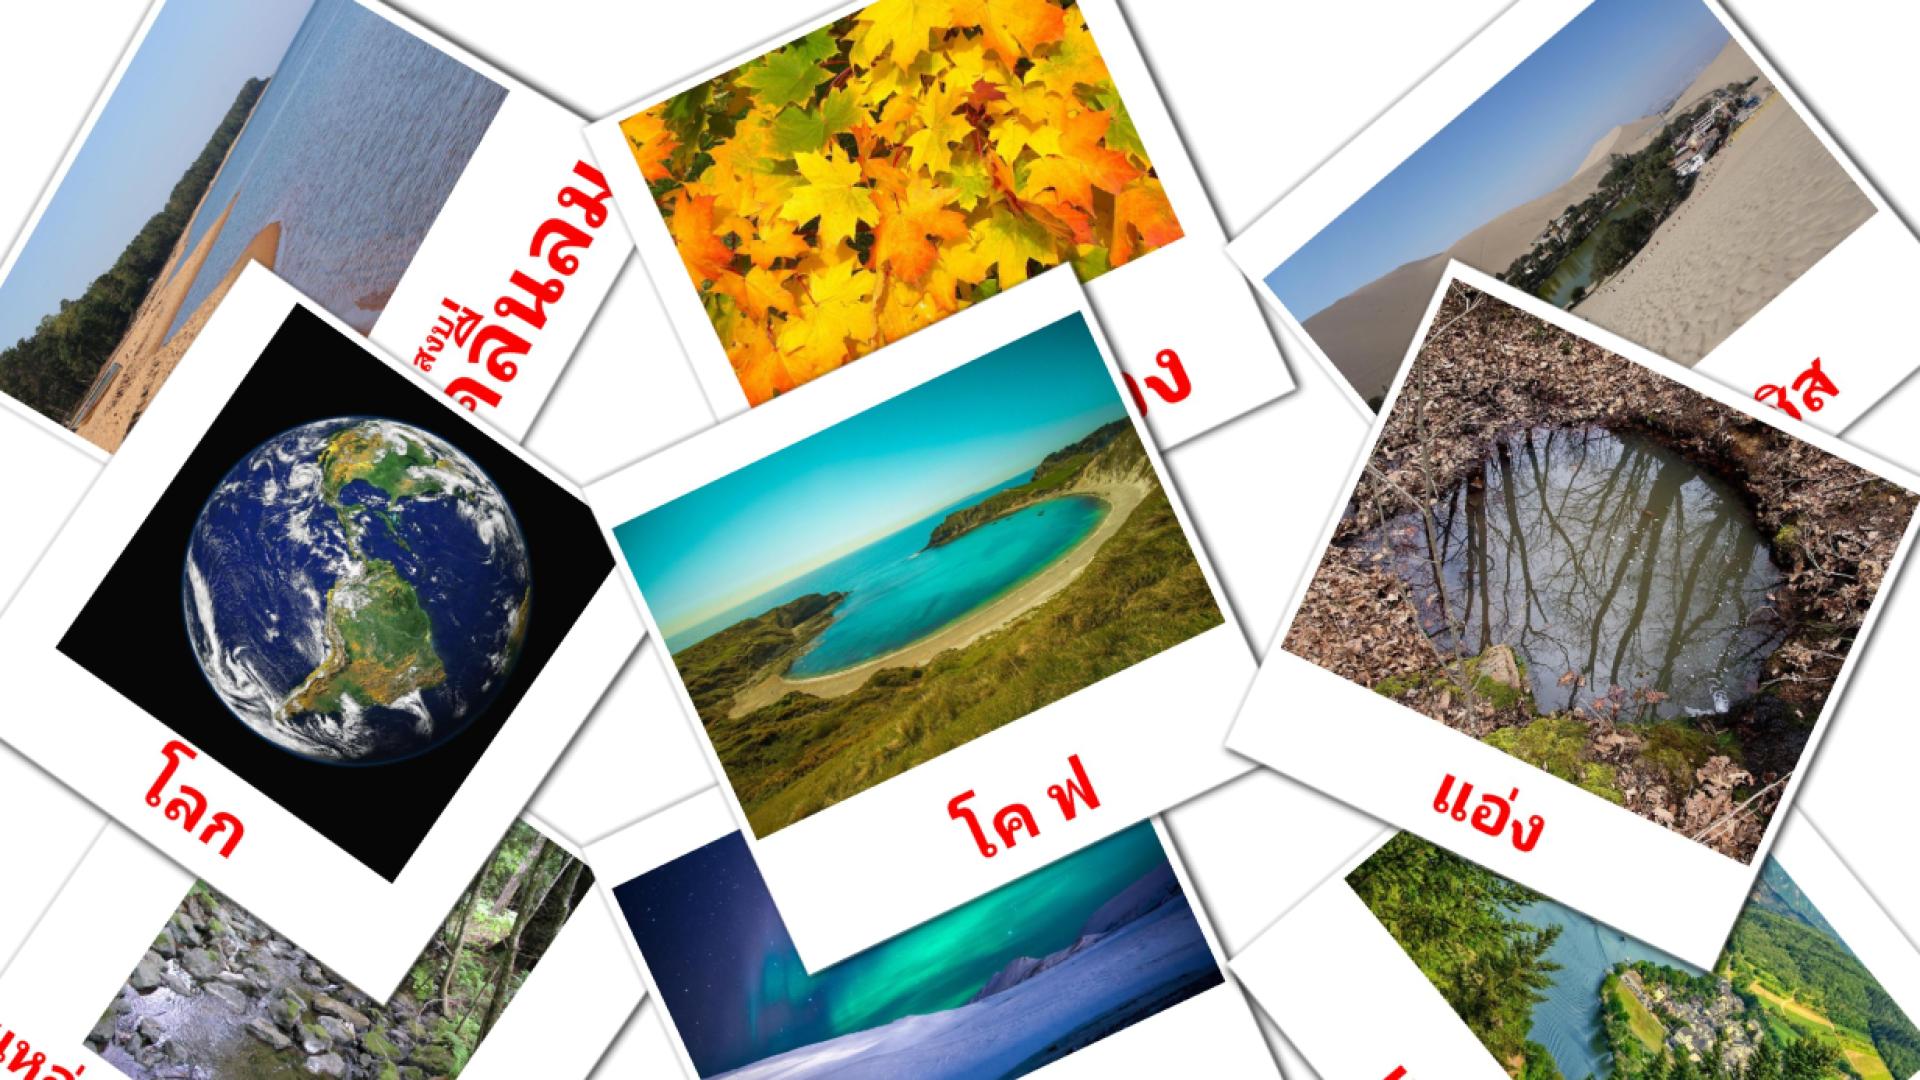  ธรรมชาติ thai vocabulary flashcards